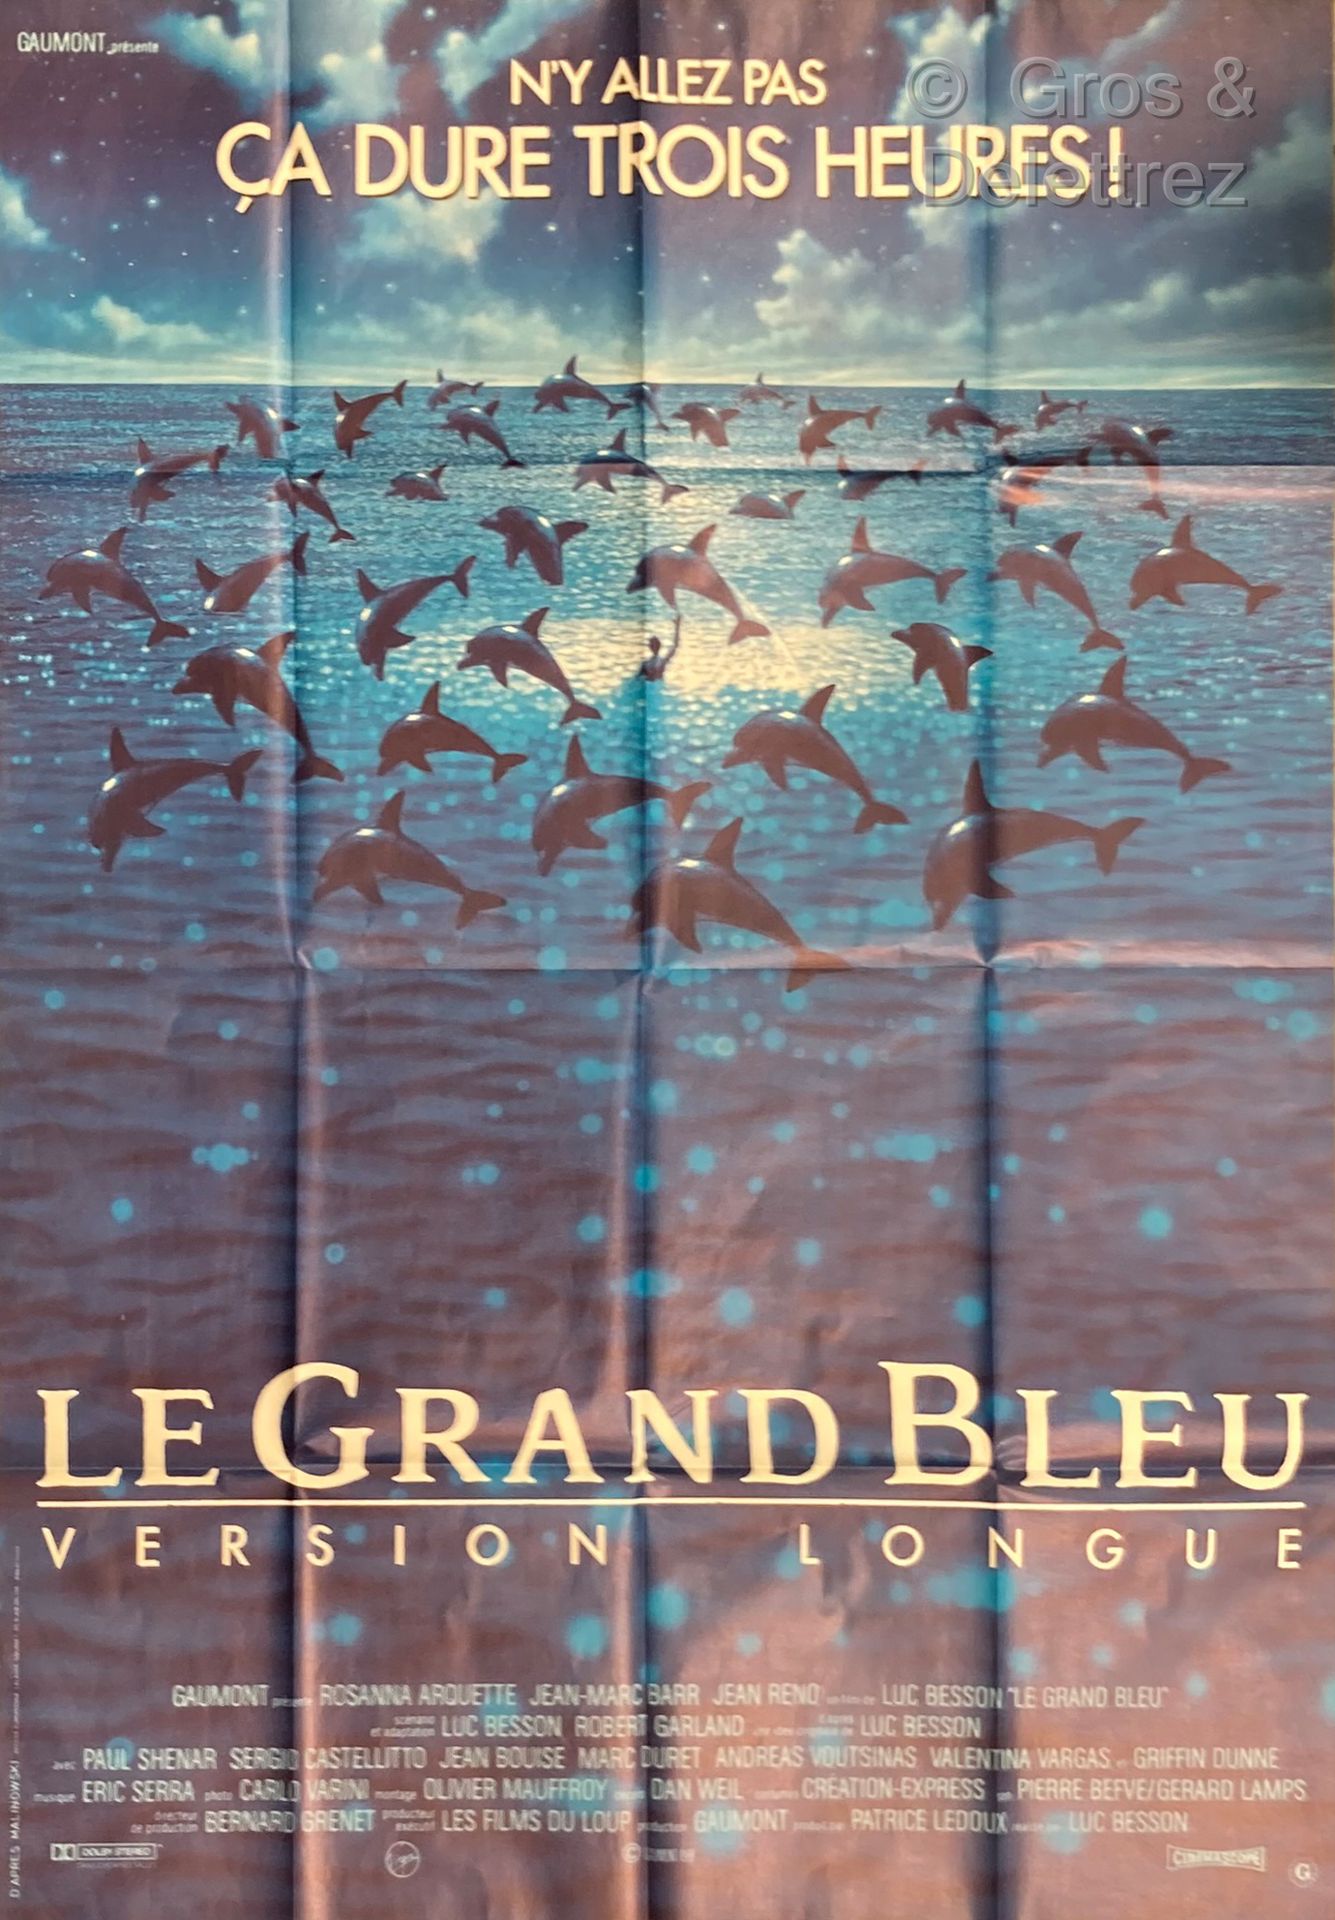 LUC BESSON LE GRAND BLEU, version longue

Affiche de cinéma

157 x 116 cm